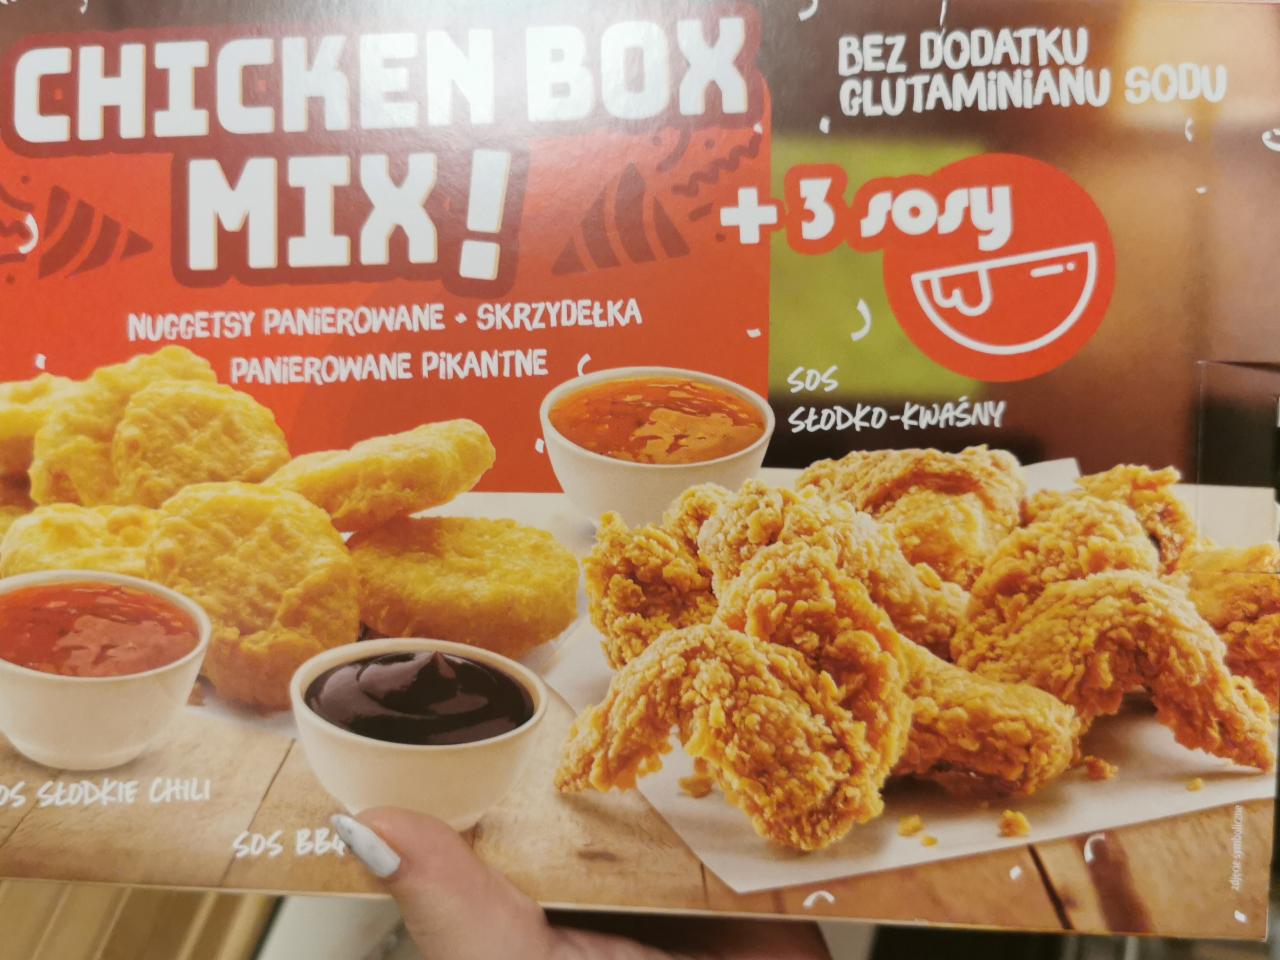 Zdjęcia - Nuggetsy Skrzydełka panierowane pikantne Chicken Box Mix - nuggetsy